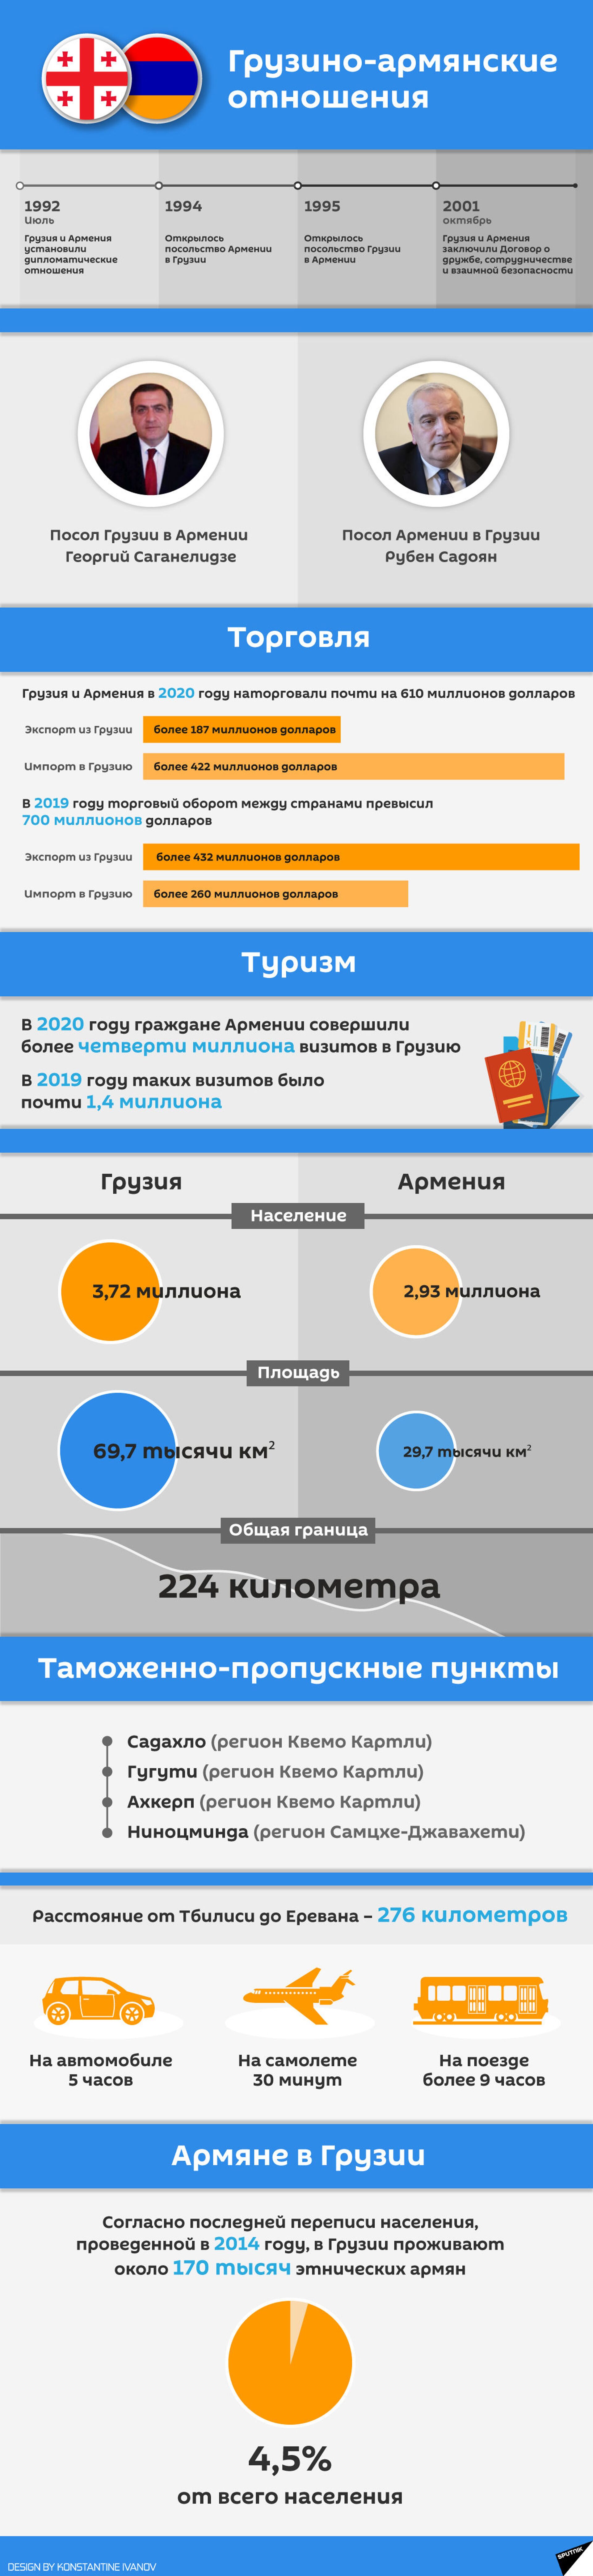 Грузино-армянские отношения 2021 - инфографика - Sputnik Грузия, 1920, 15.04.2021